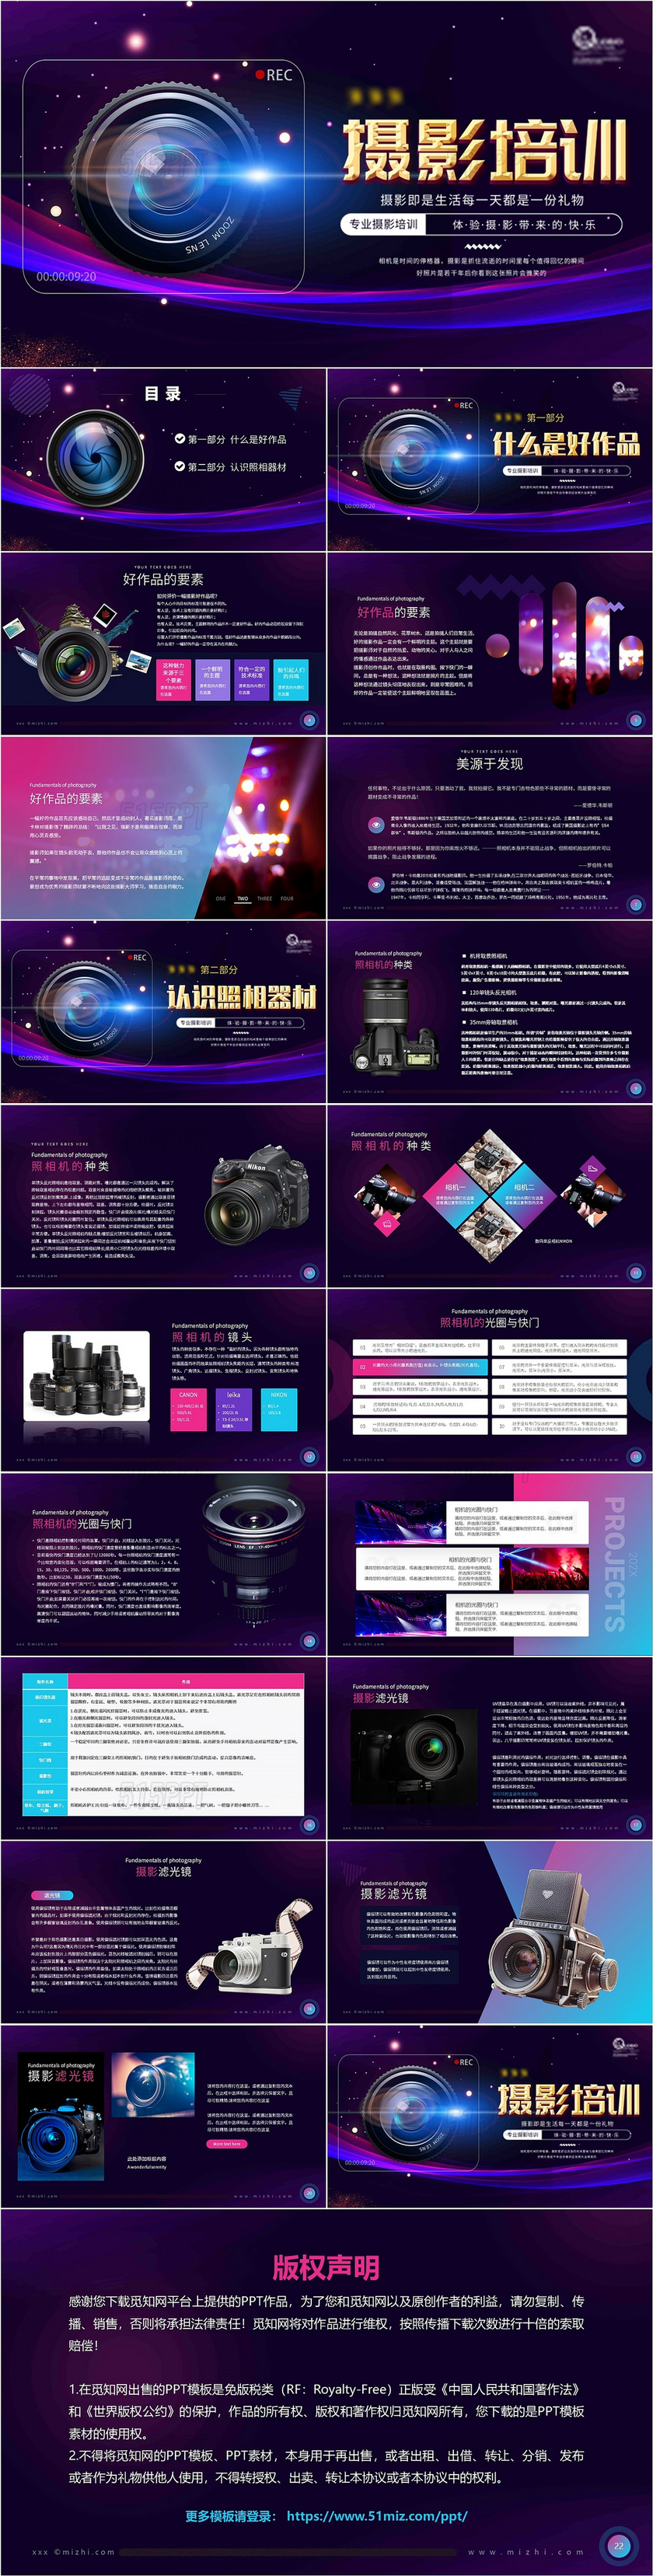 蓝色紫色科技时尚摄影培训摄影基础知识动态PPT模板摄影知识培训